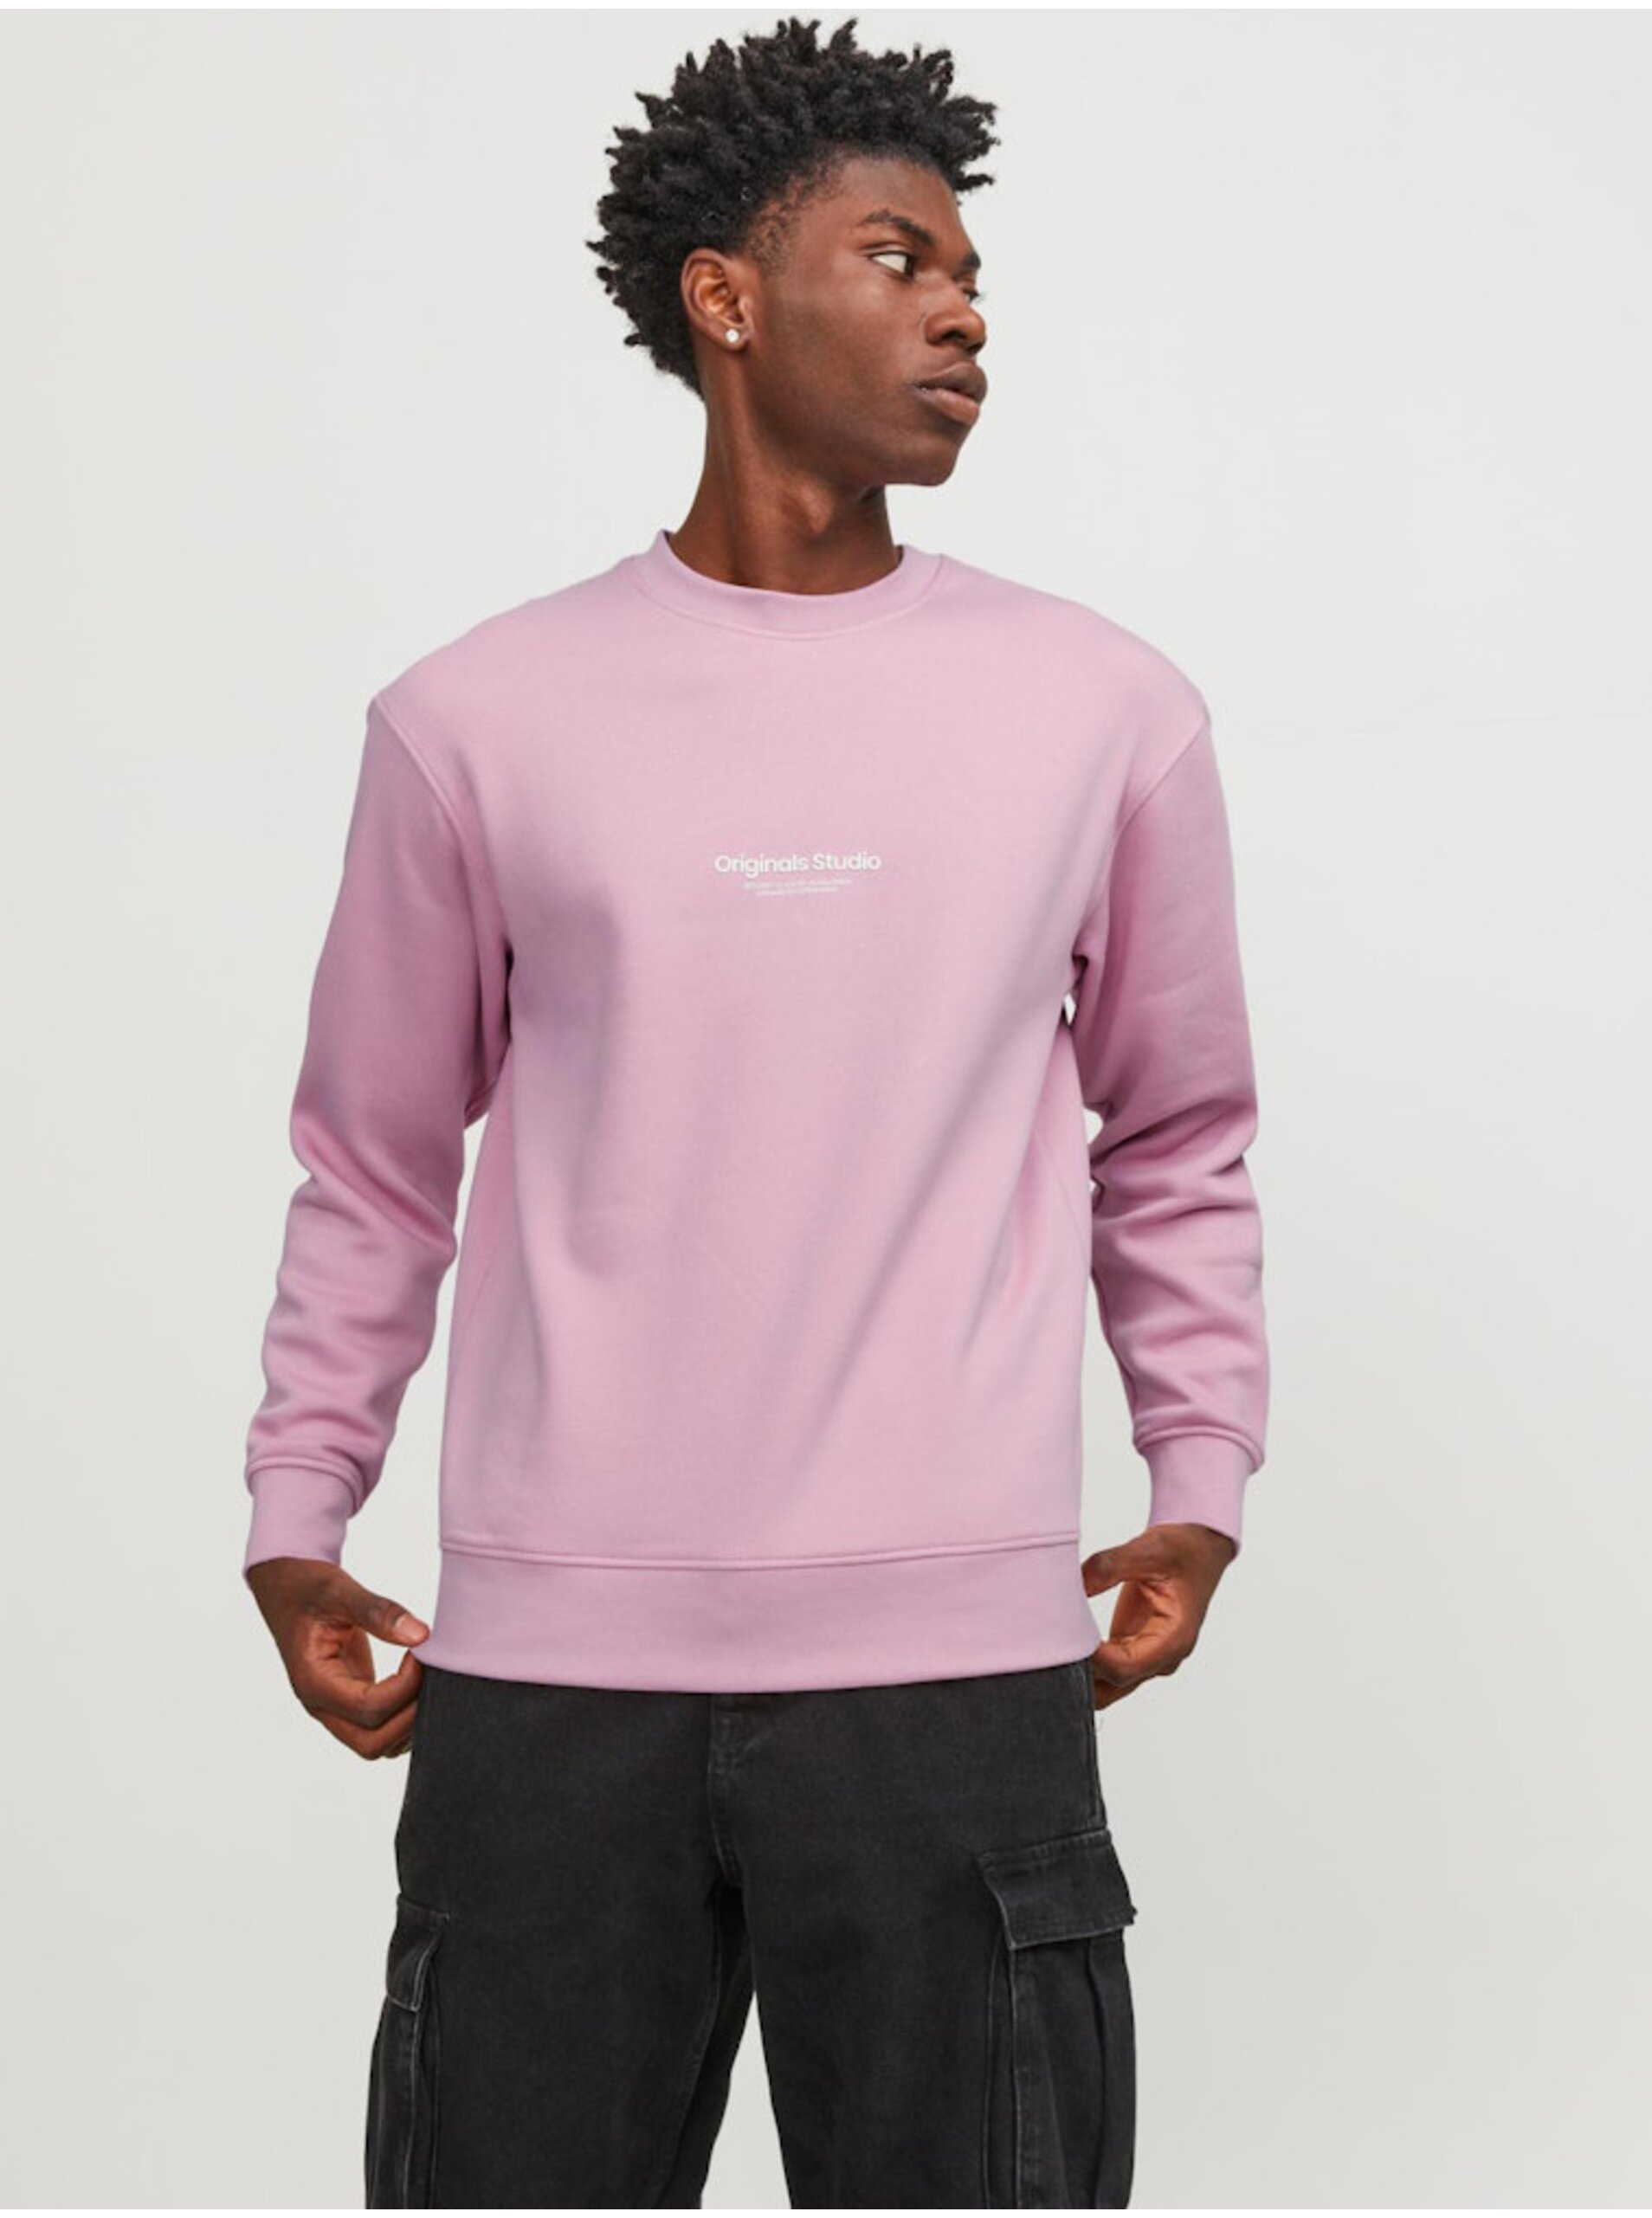 Men's Light Pink Sweatshirt Jack & Jones Vesterbro - Men